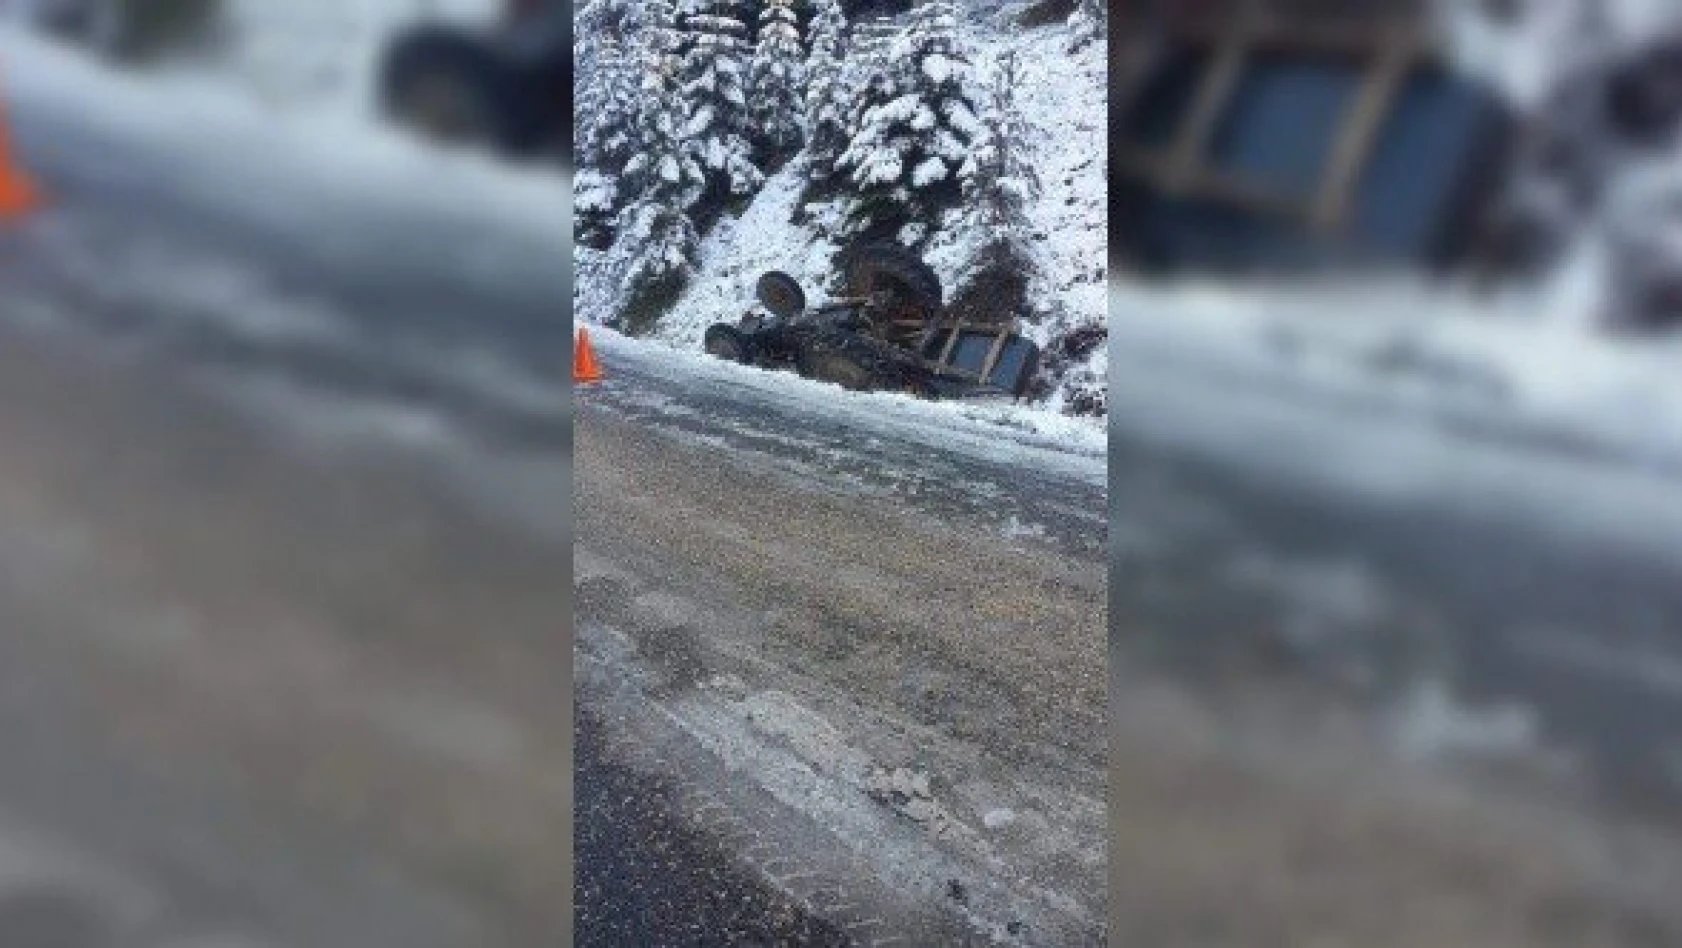 Kastamonu'da traktör devrildi: 1 ölü